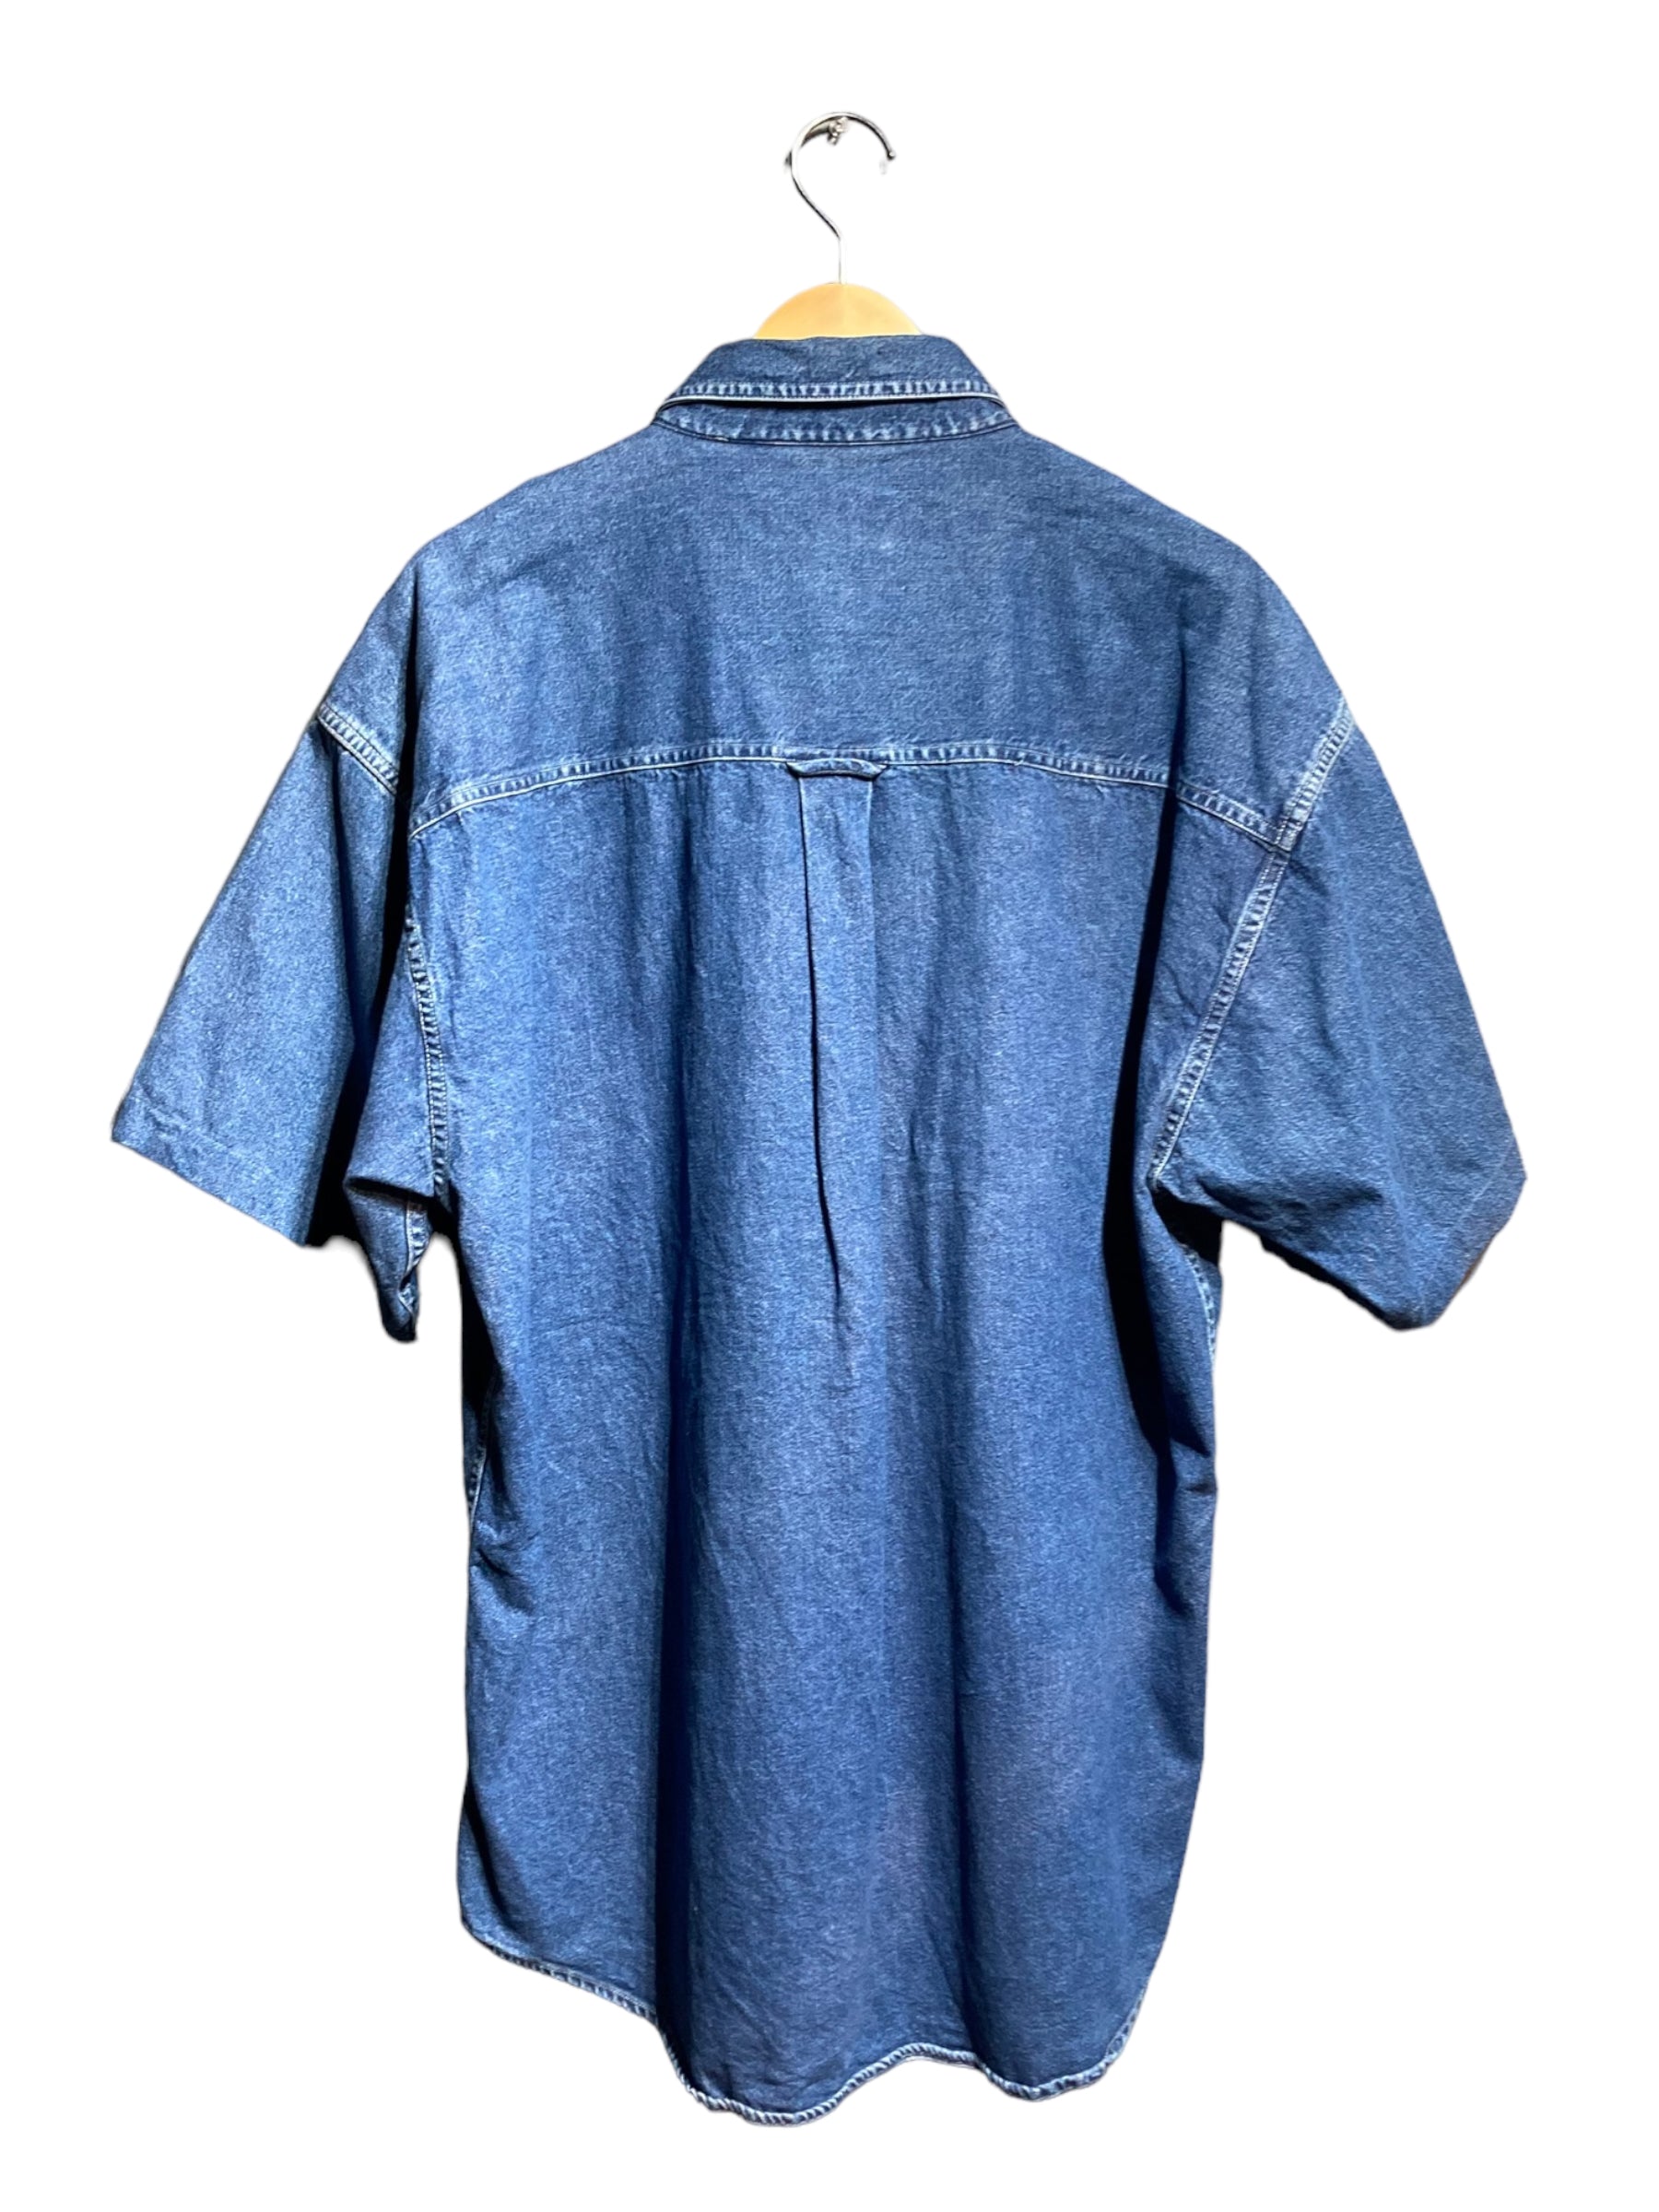 90s Chaps チャップス Ralph Lauren ラルフローレン 半袖シャツ デニムシャツ 柄シャツ